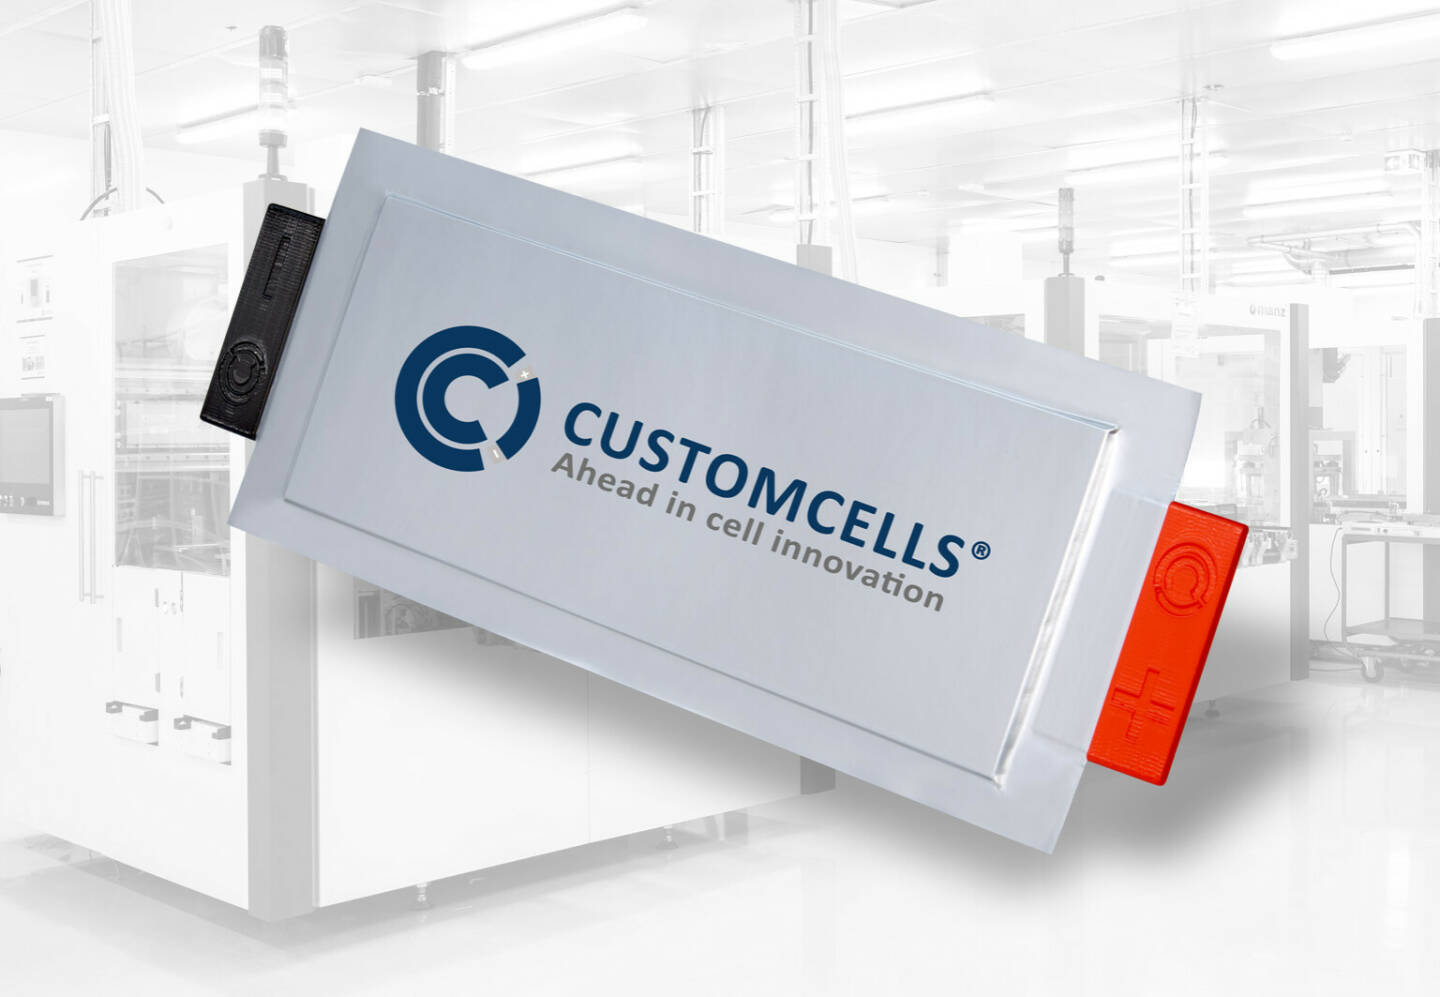 Customcells startet Entwicklungspartnerschaft mit OneD - Industrialisierung von BEV-Batteriezellen für einen international
tätigen Automotive OEM Fotocredit:CUSTOMCELLS®